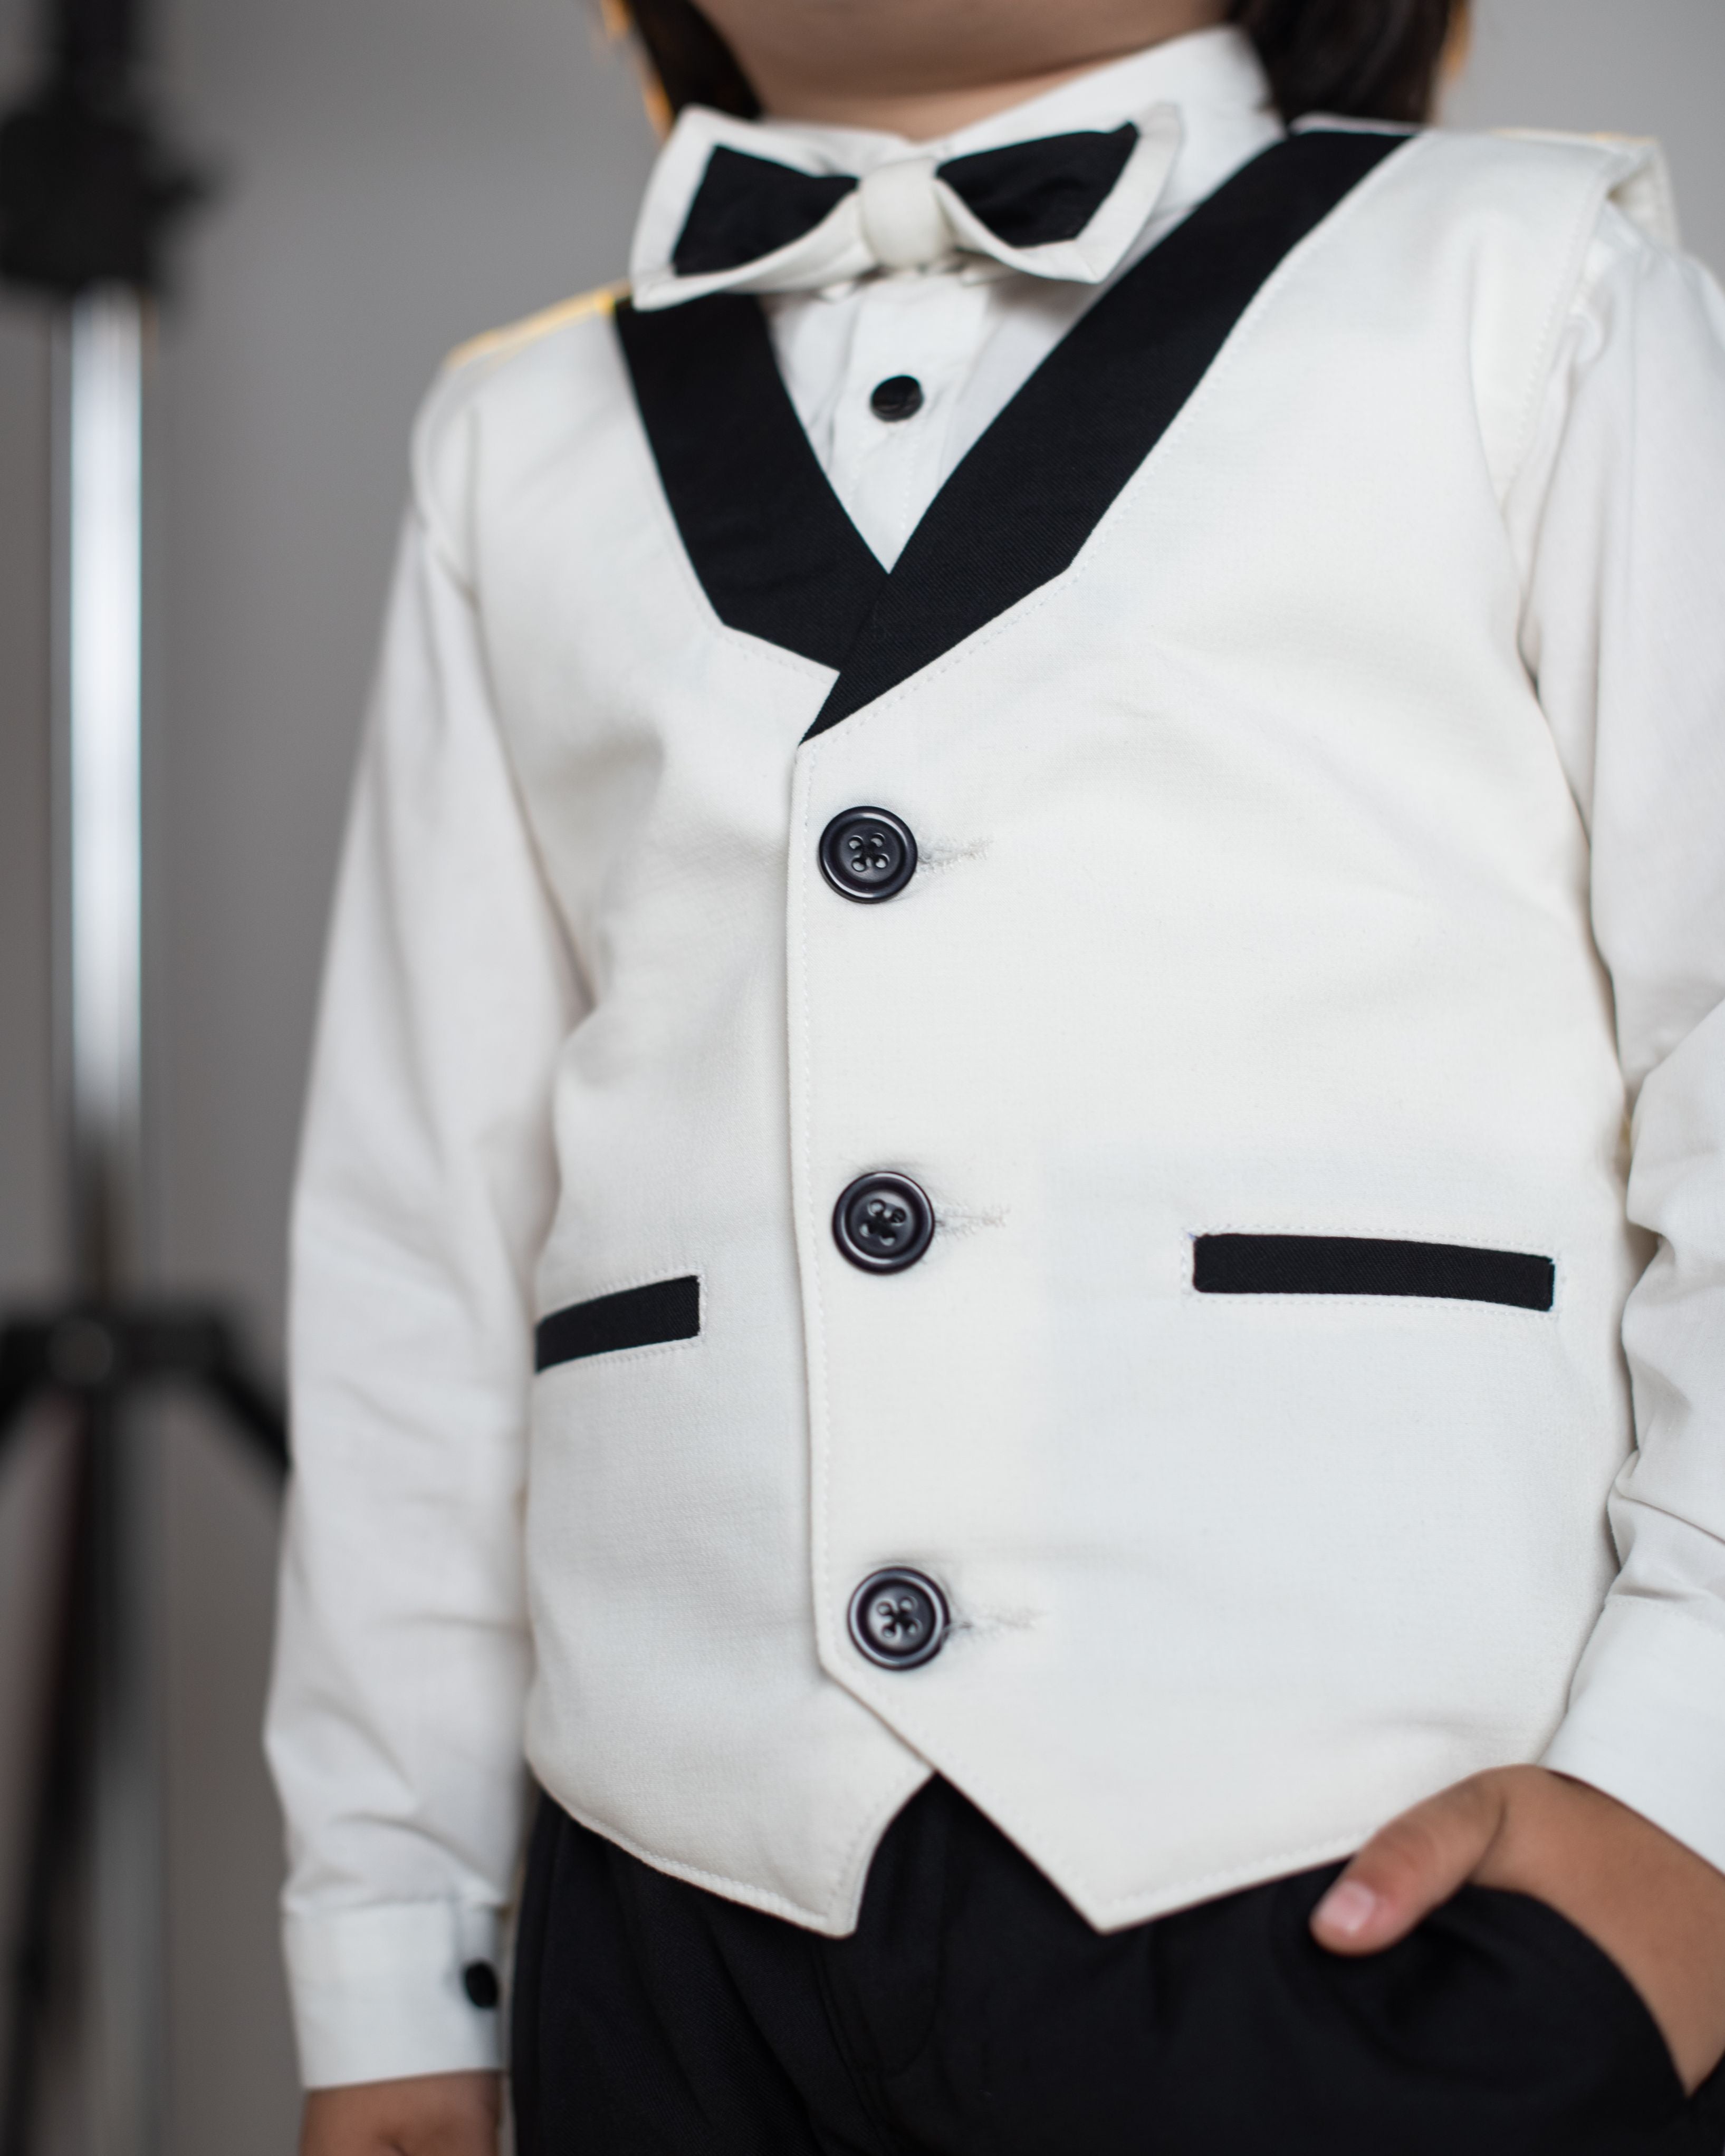 Boys Tuxedo Suit white